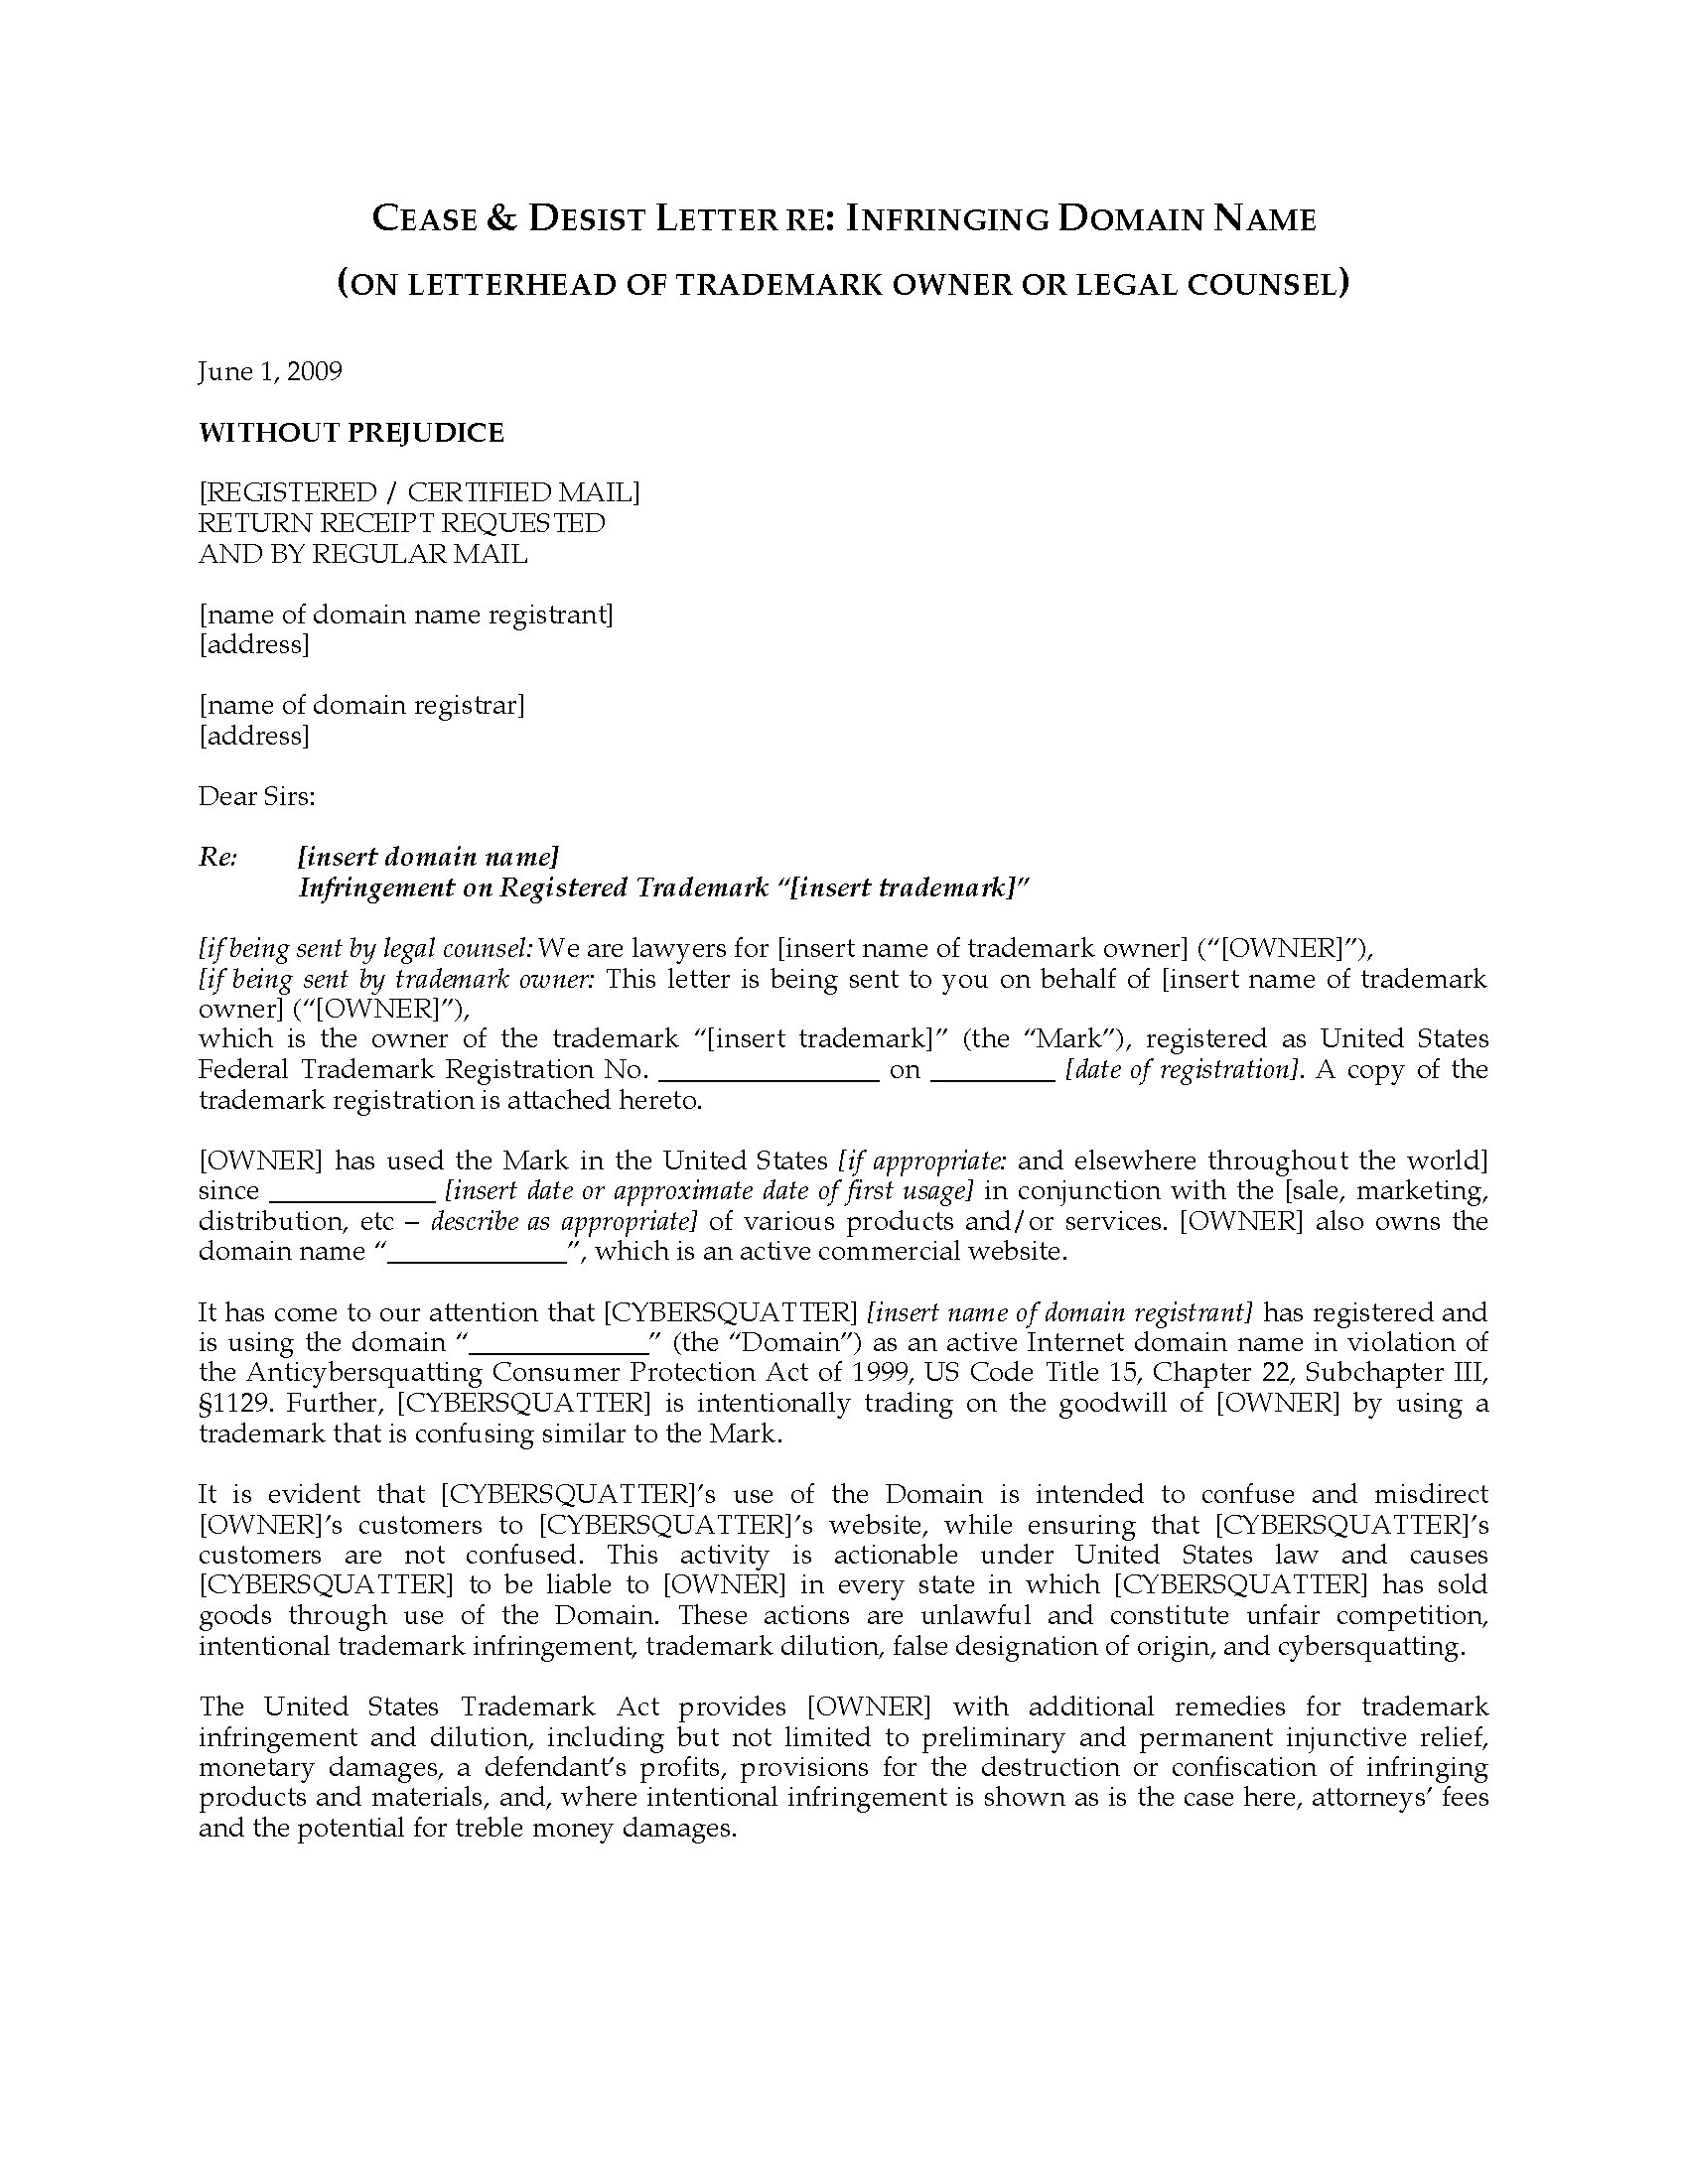 Cease and Desist Letter Patent Infringement Template - 20 Best Trademark Infringement Letter Template Uk Pics